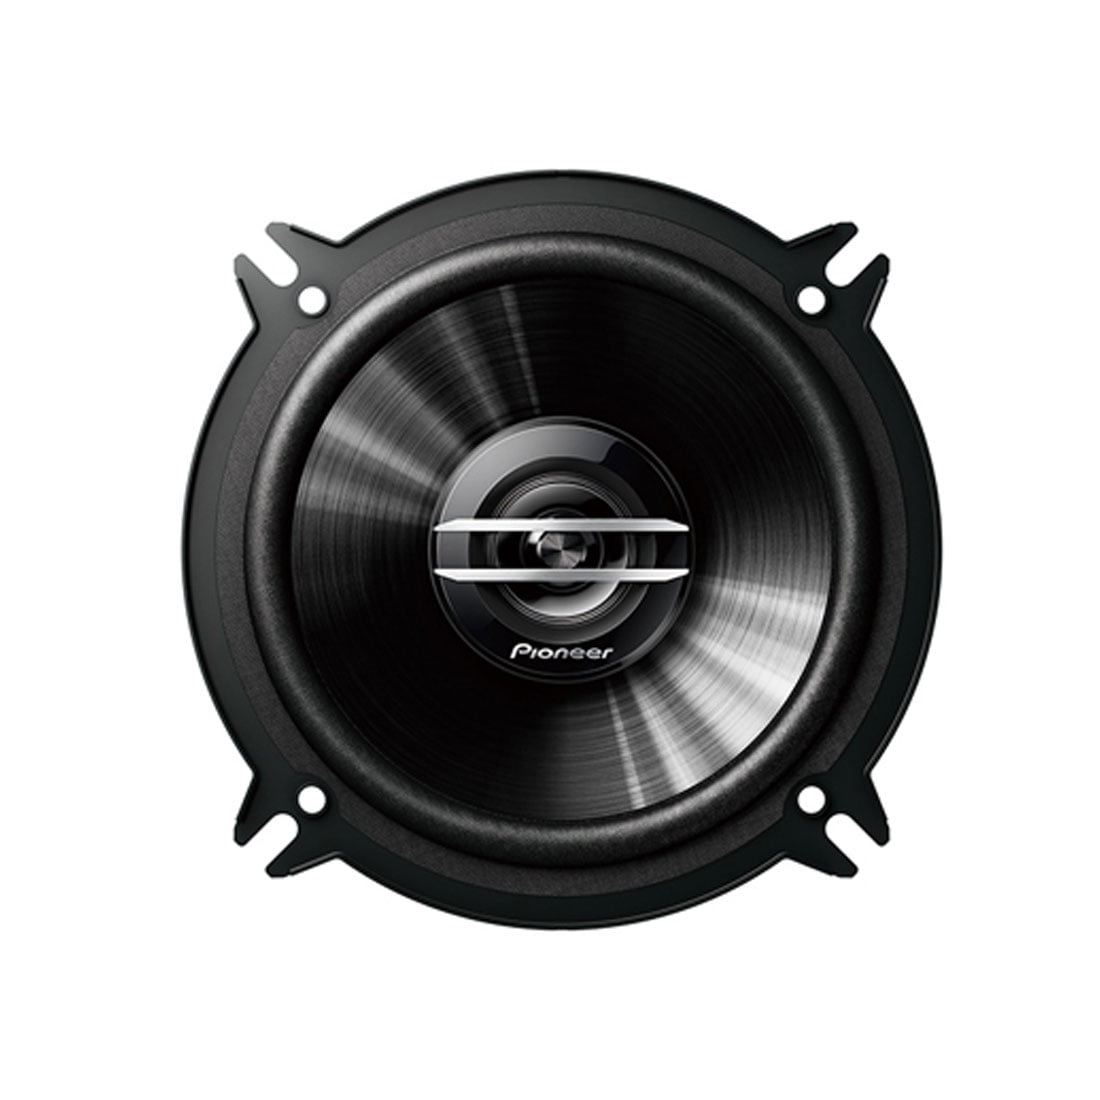 Pioneer TS-G1320S 5-1/4 2-Way Coaxial Car Speaker